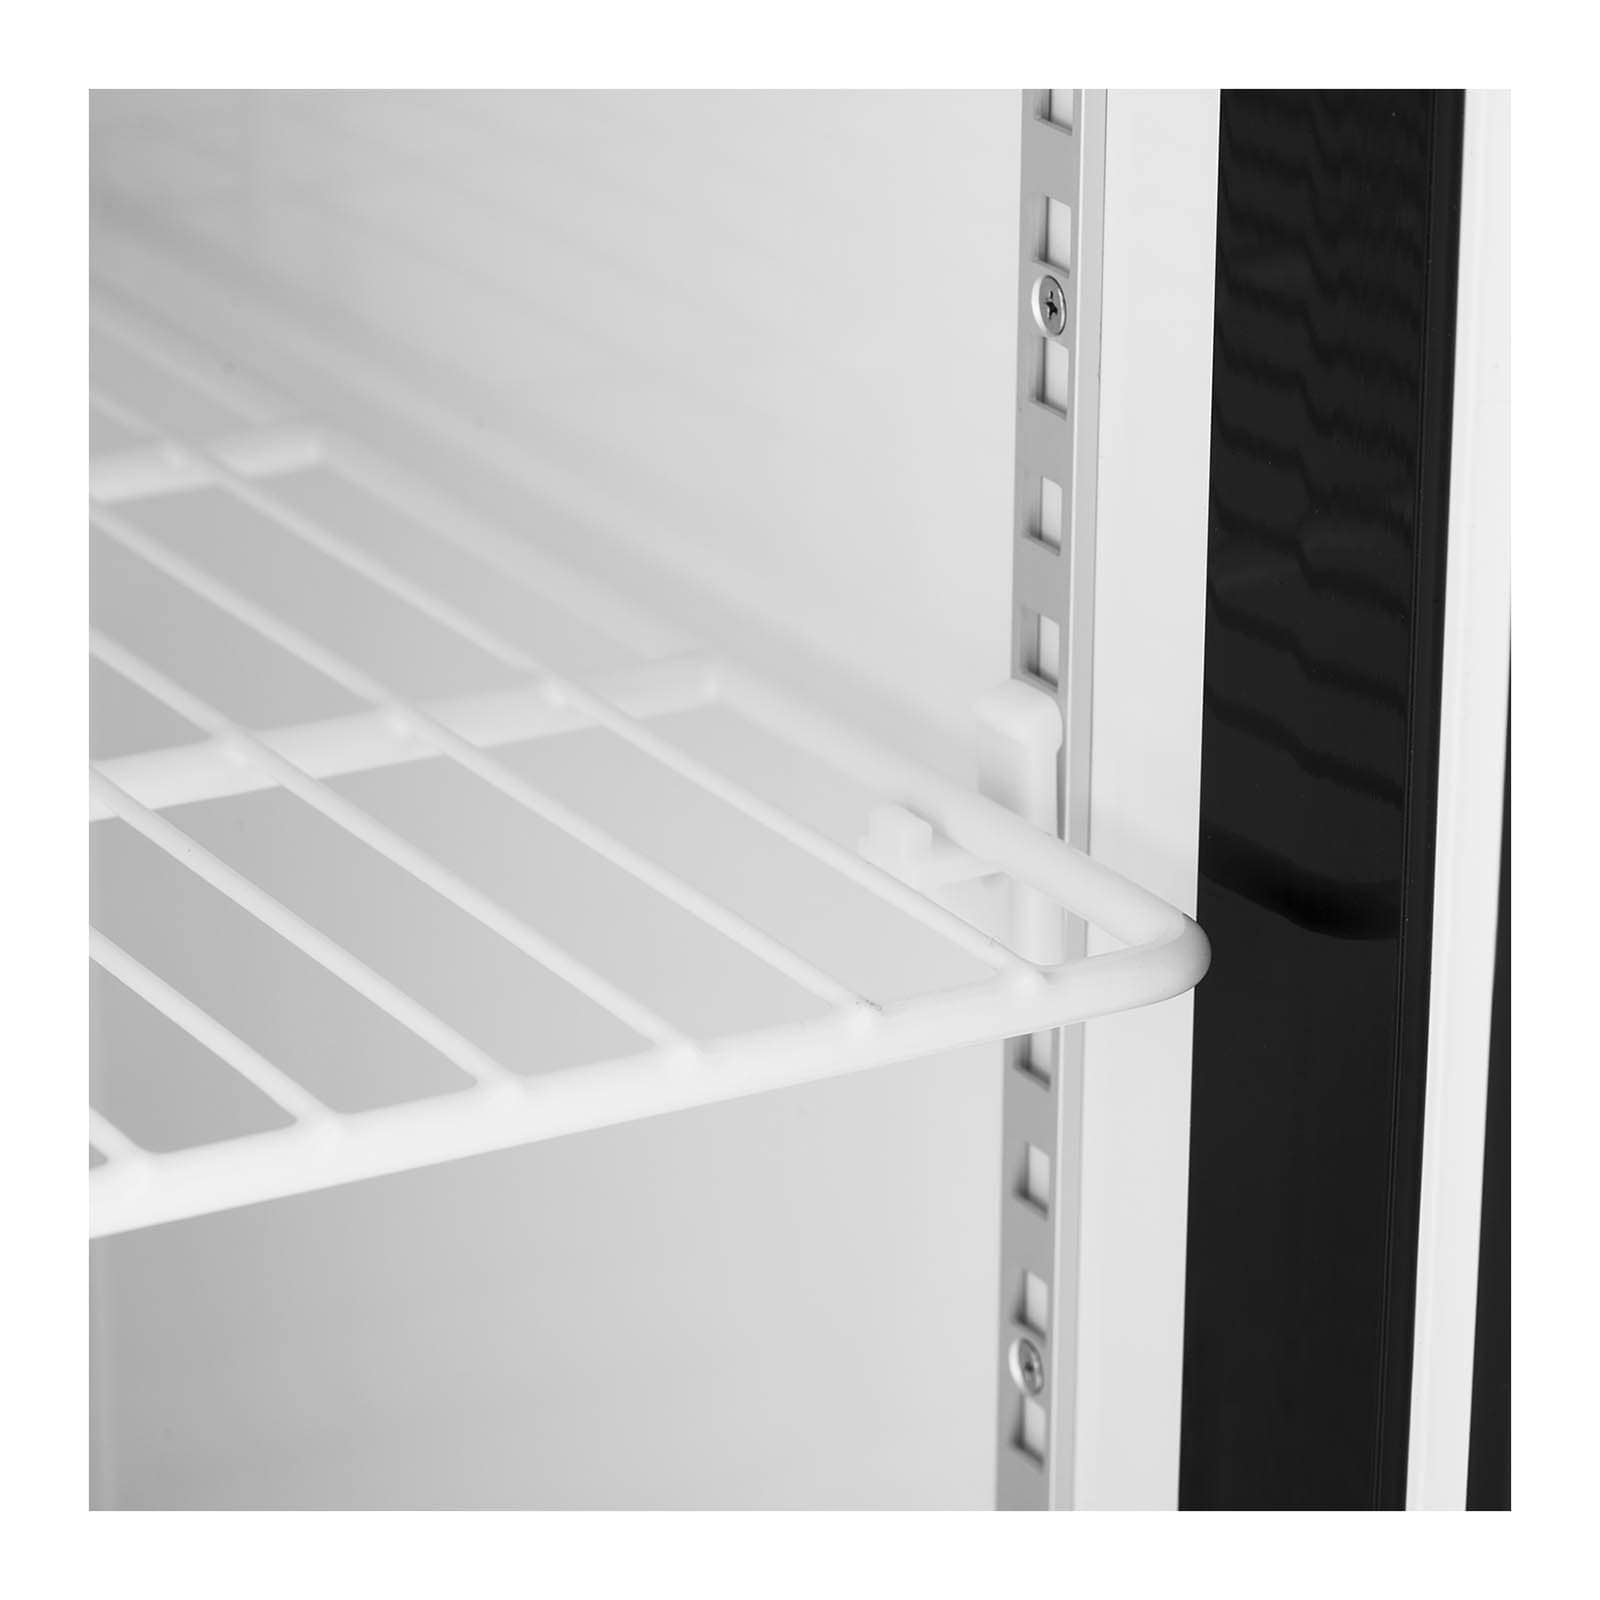 Grand frigo refrigerateur professionnel grande capacite sans